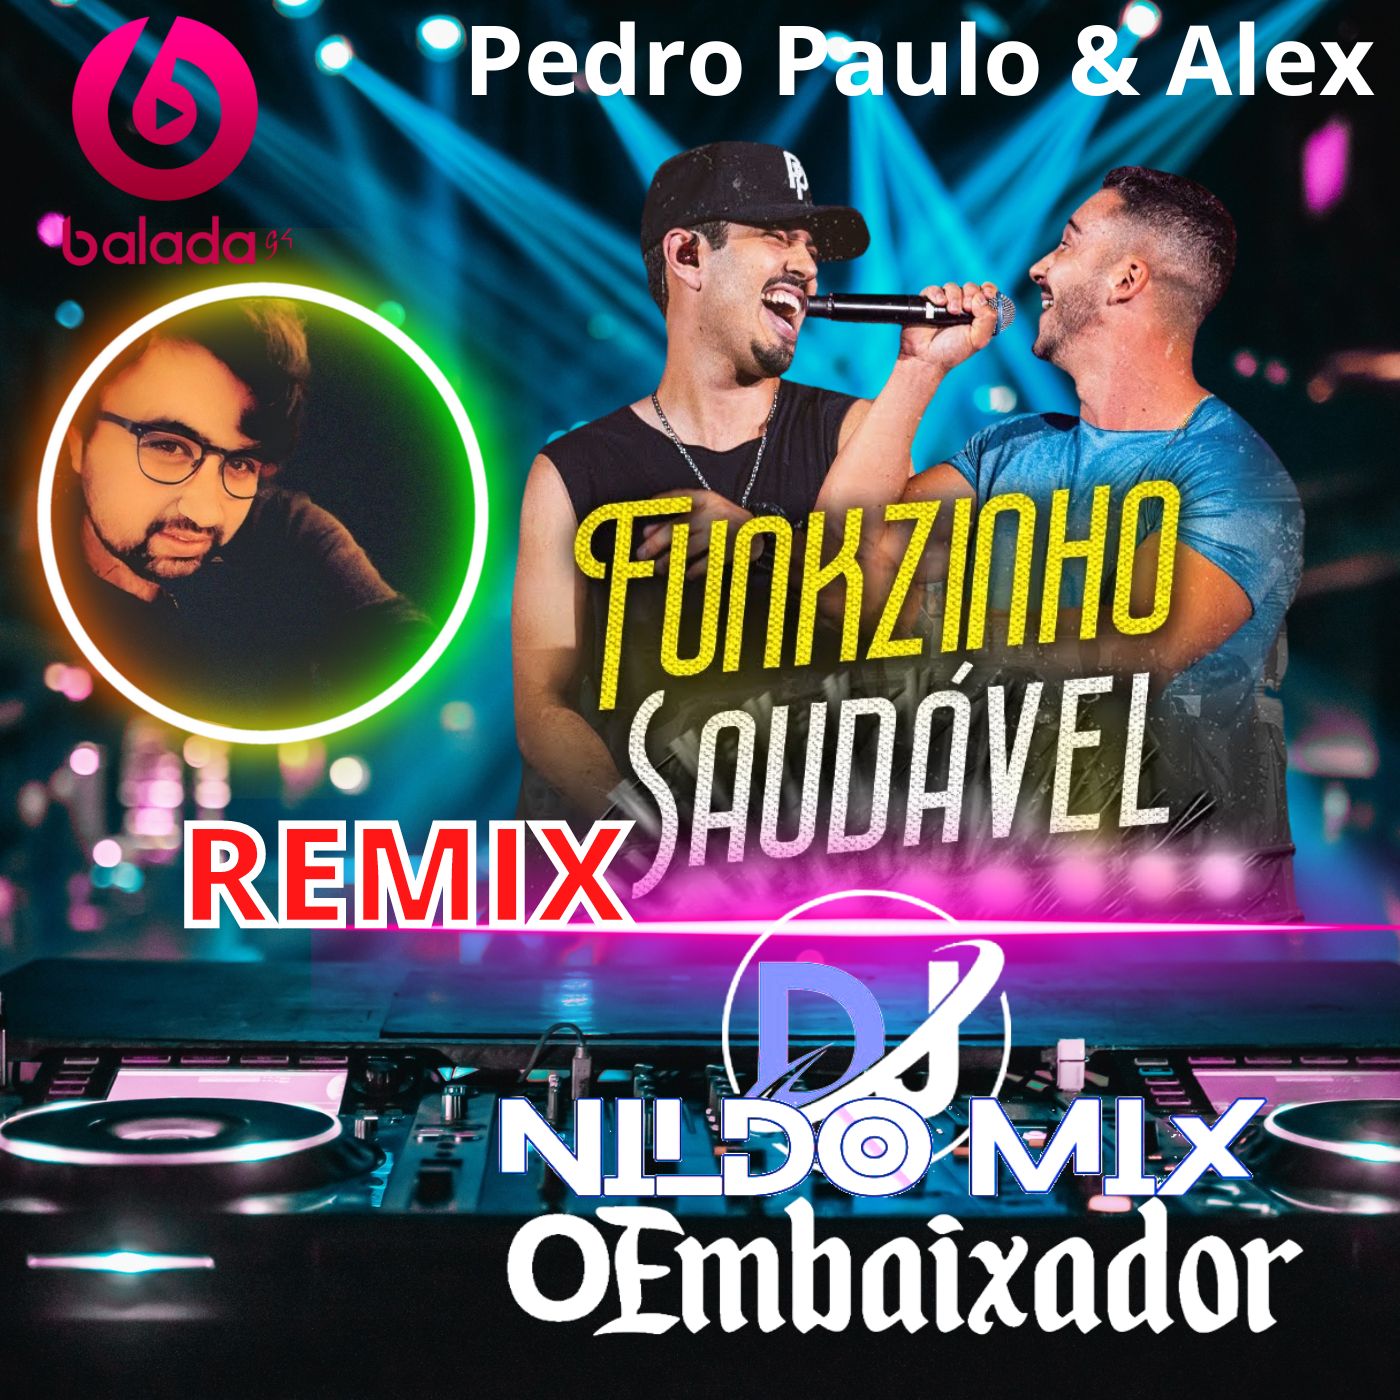 Pedro Paulo & Alex Funkzinho Saudável REMIX DJ NILDO MIX